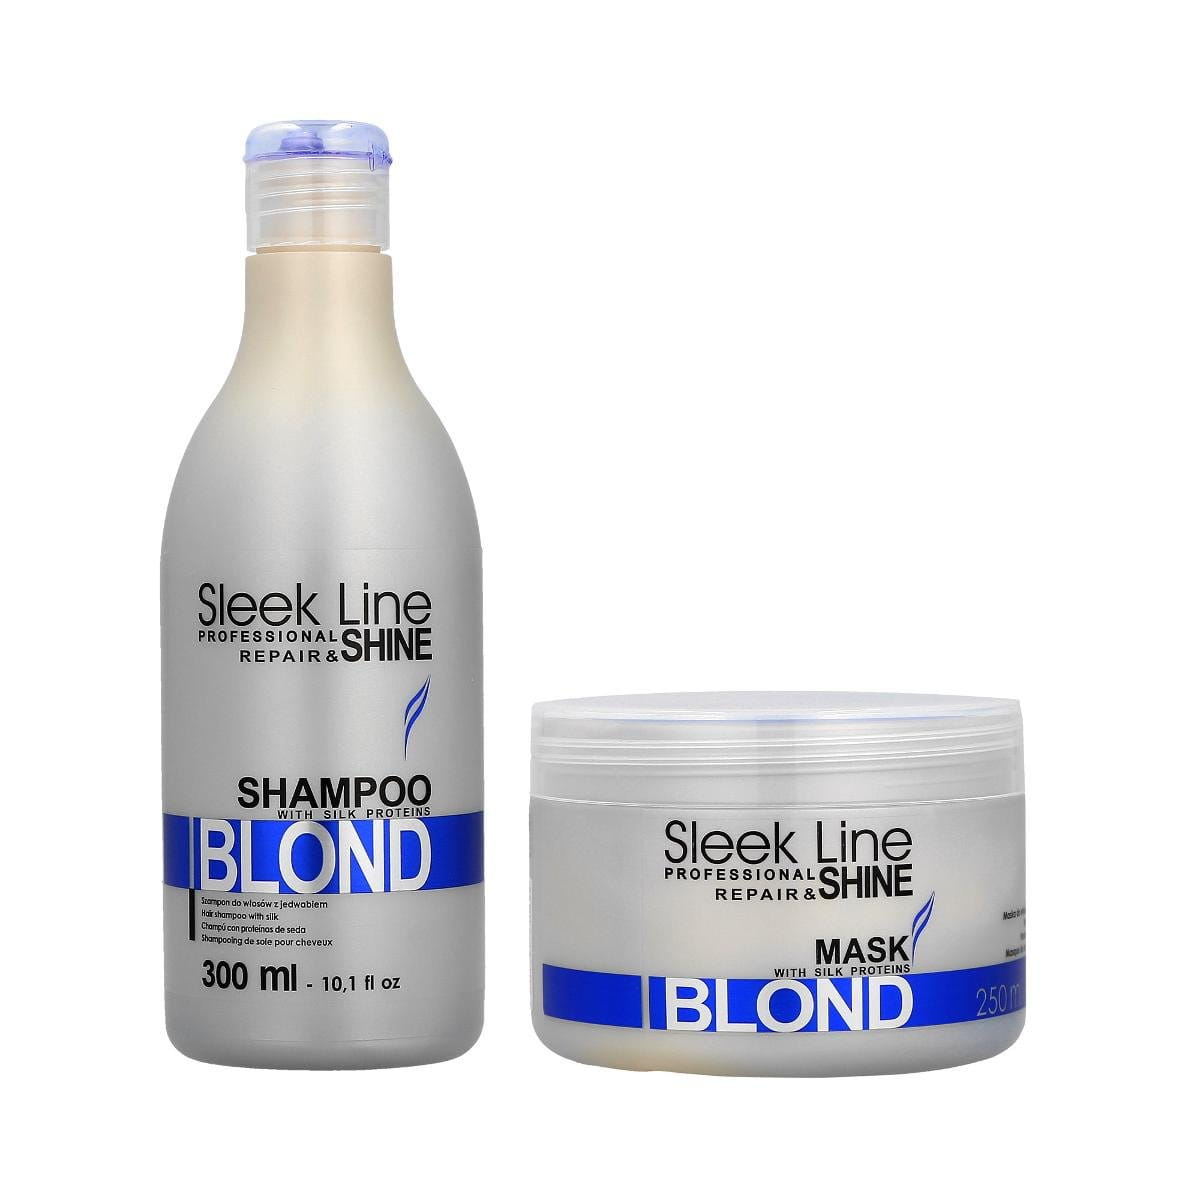 sleek line blond szampon niebieski